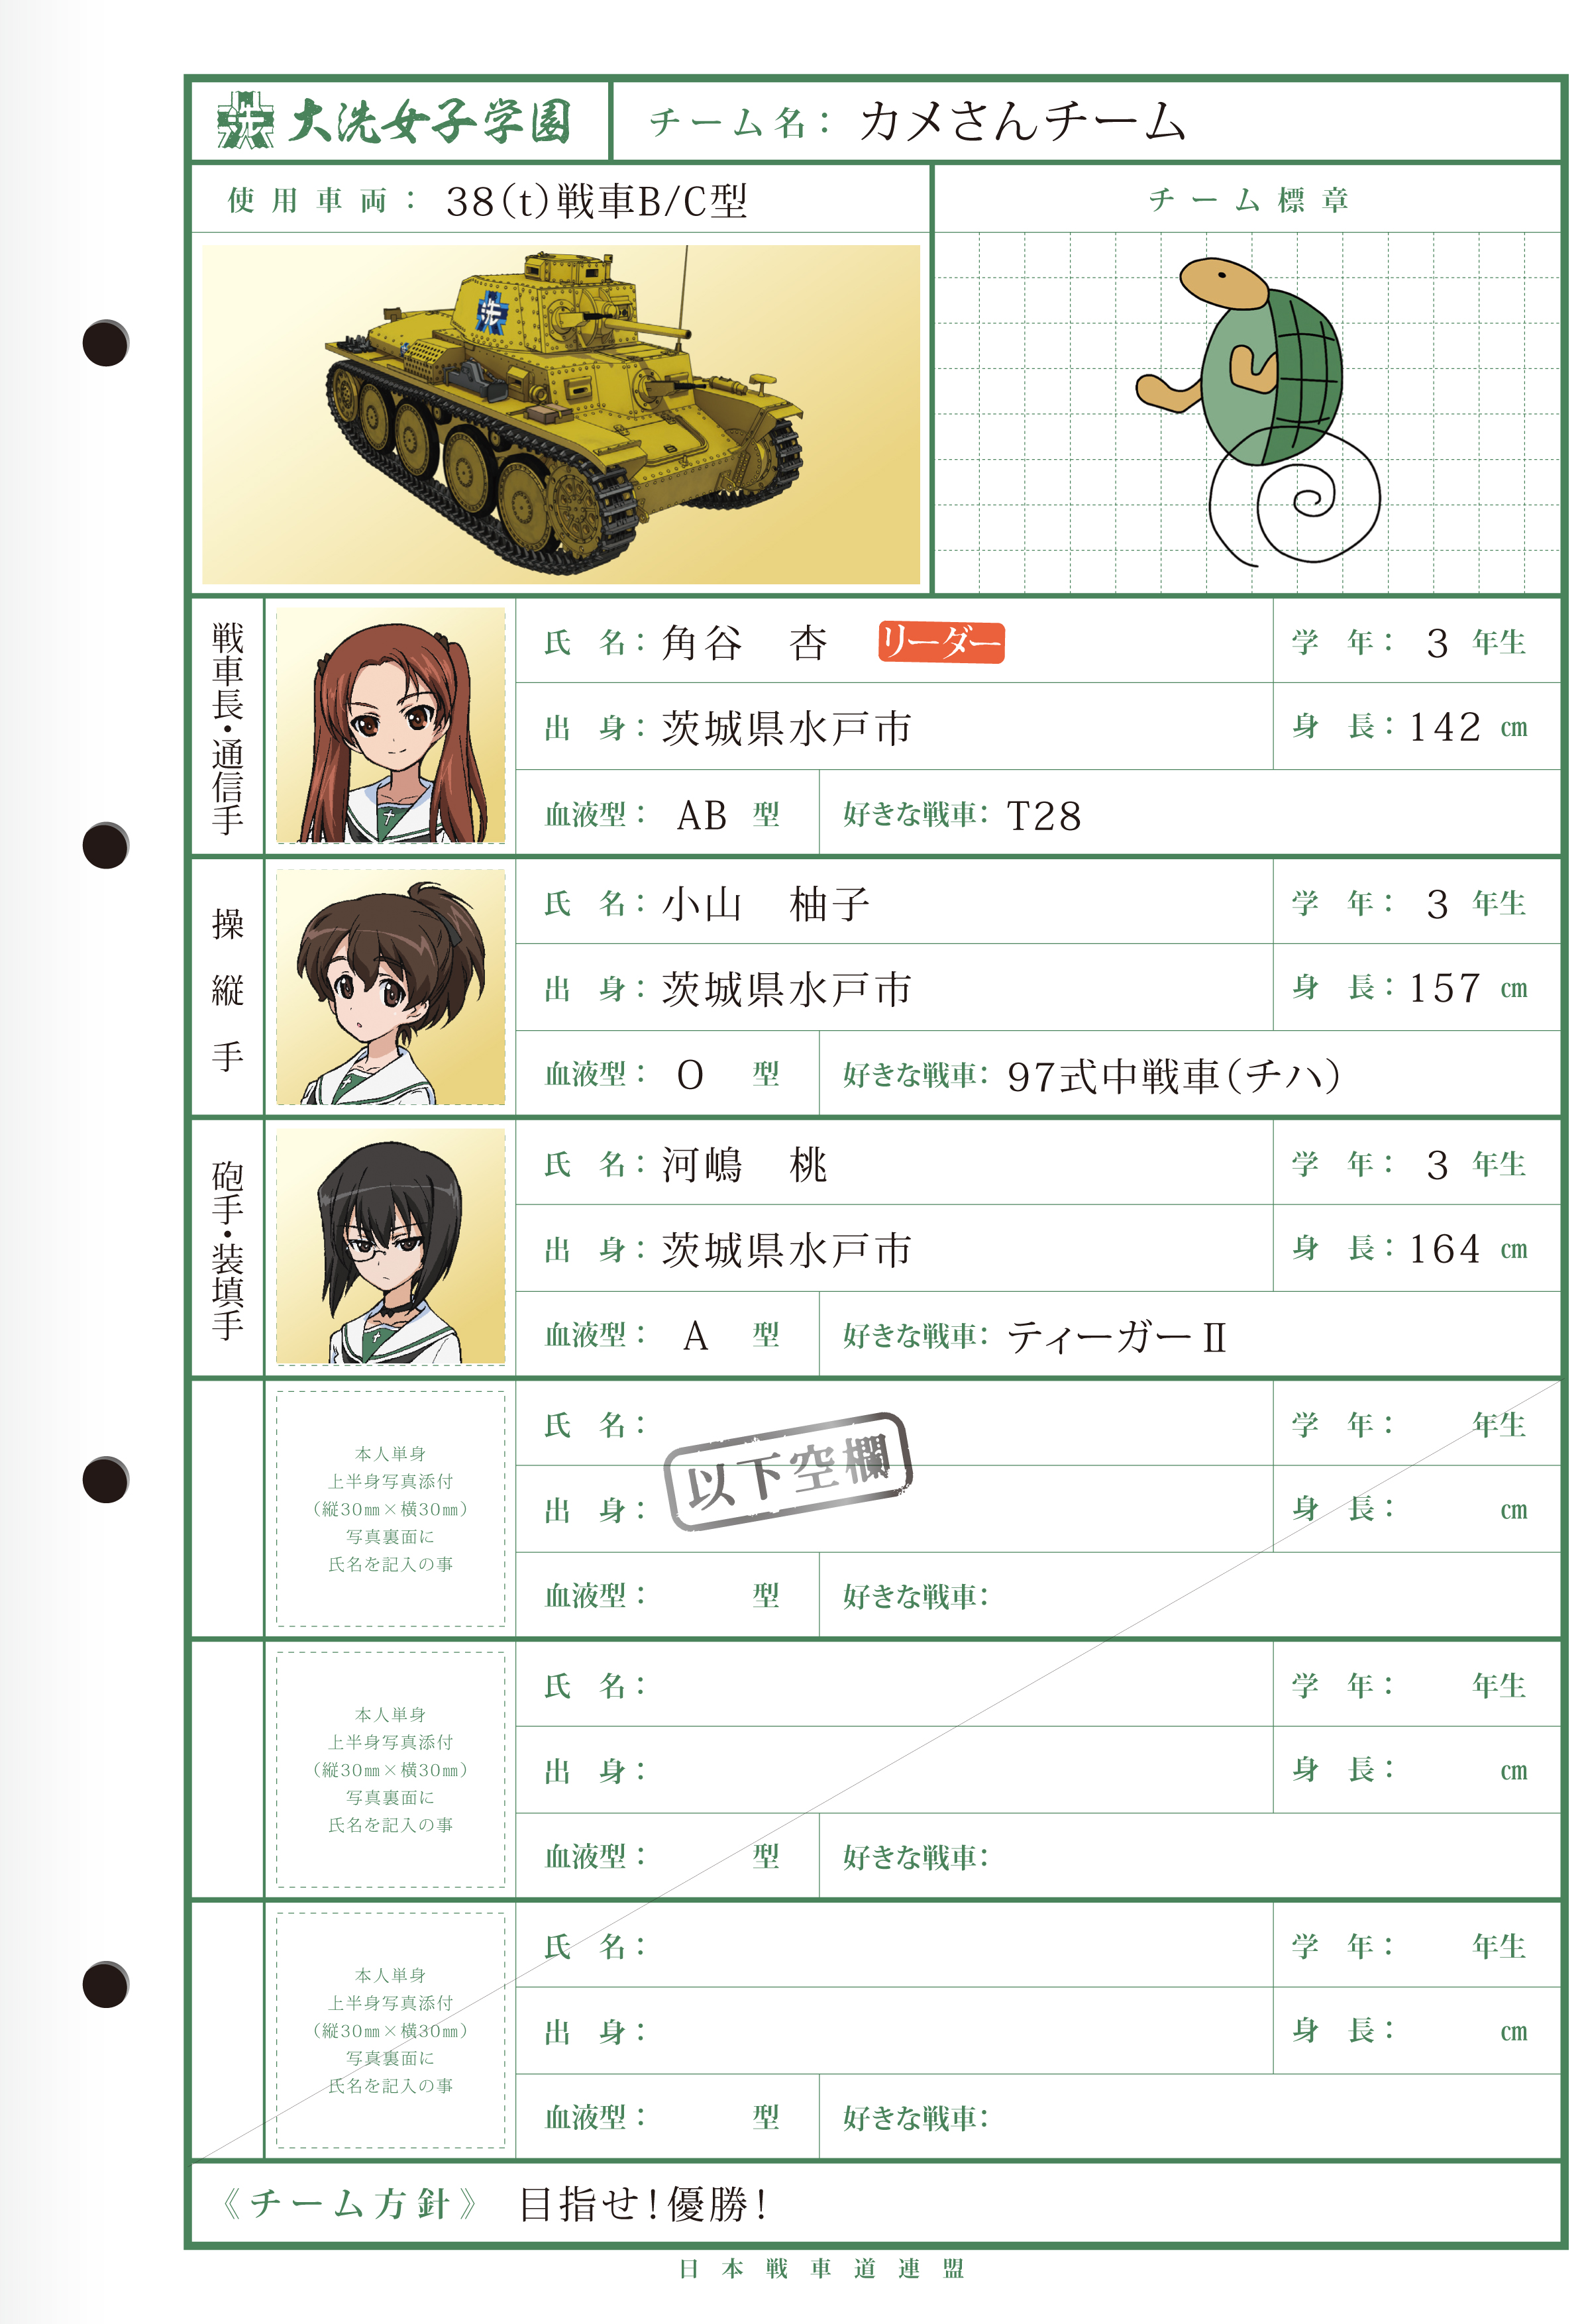 名簿 配布コンテンツ スペシャル ガールズ パンツァー Girls Und Panzer 公式サイト